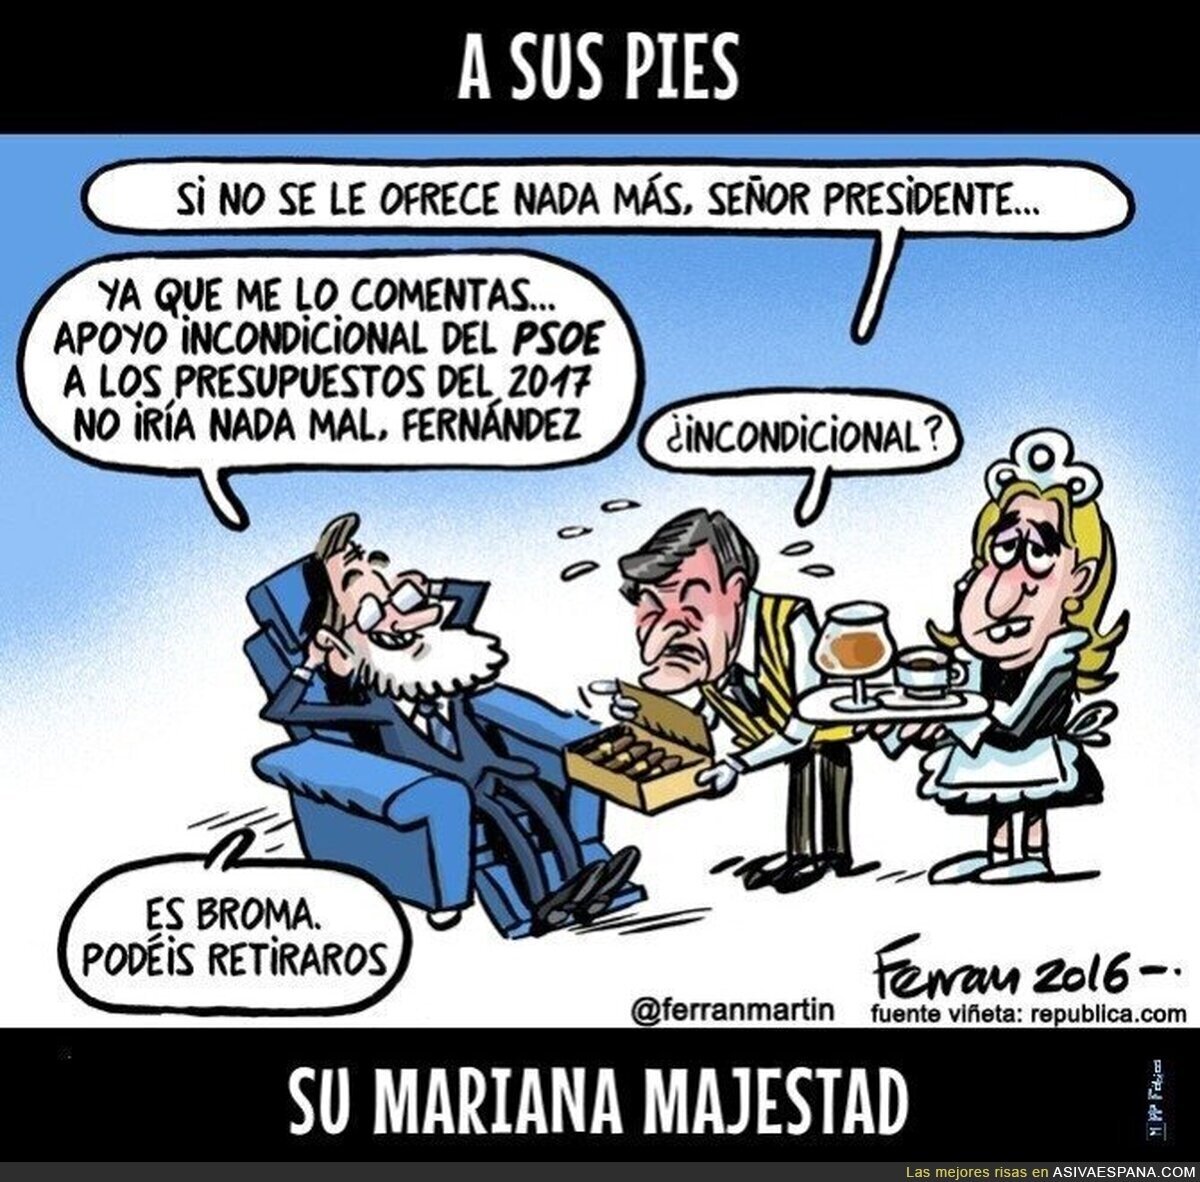 El PSOE a las órdenes de Mariano